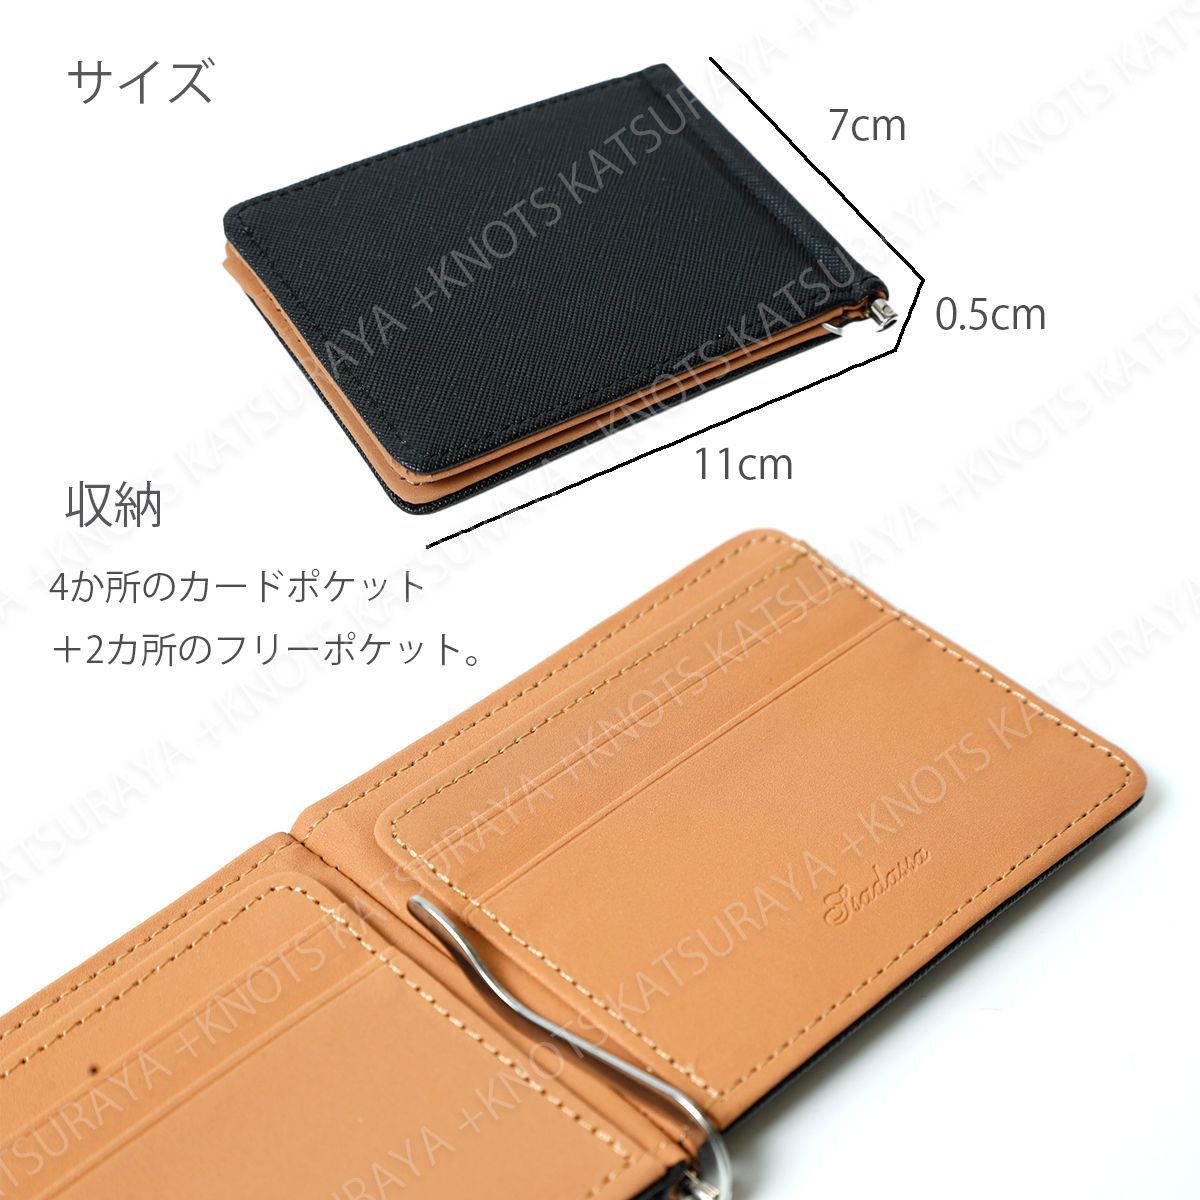 マネークリップ メンズ 財布 二つ折り 極薄 薄いマネークリップ レッド